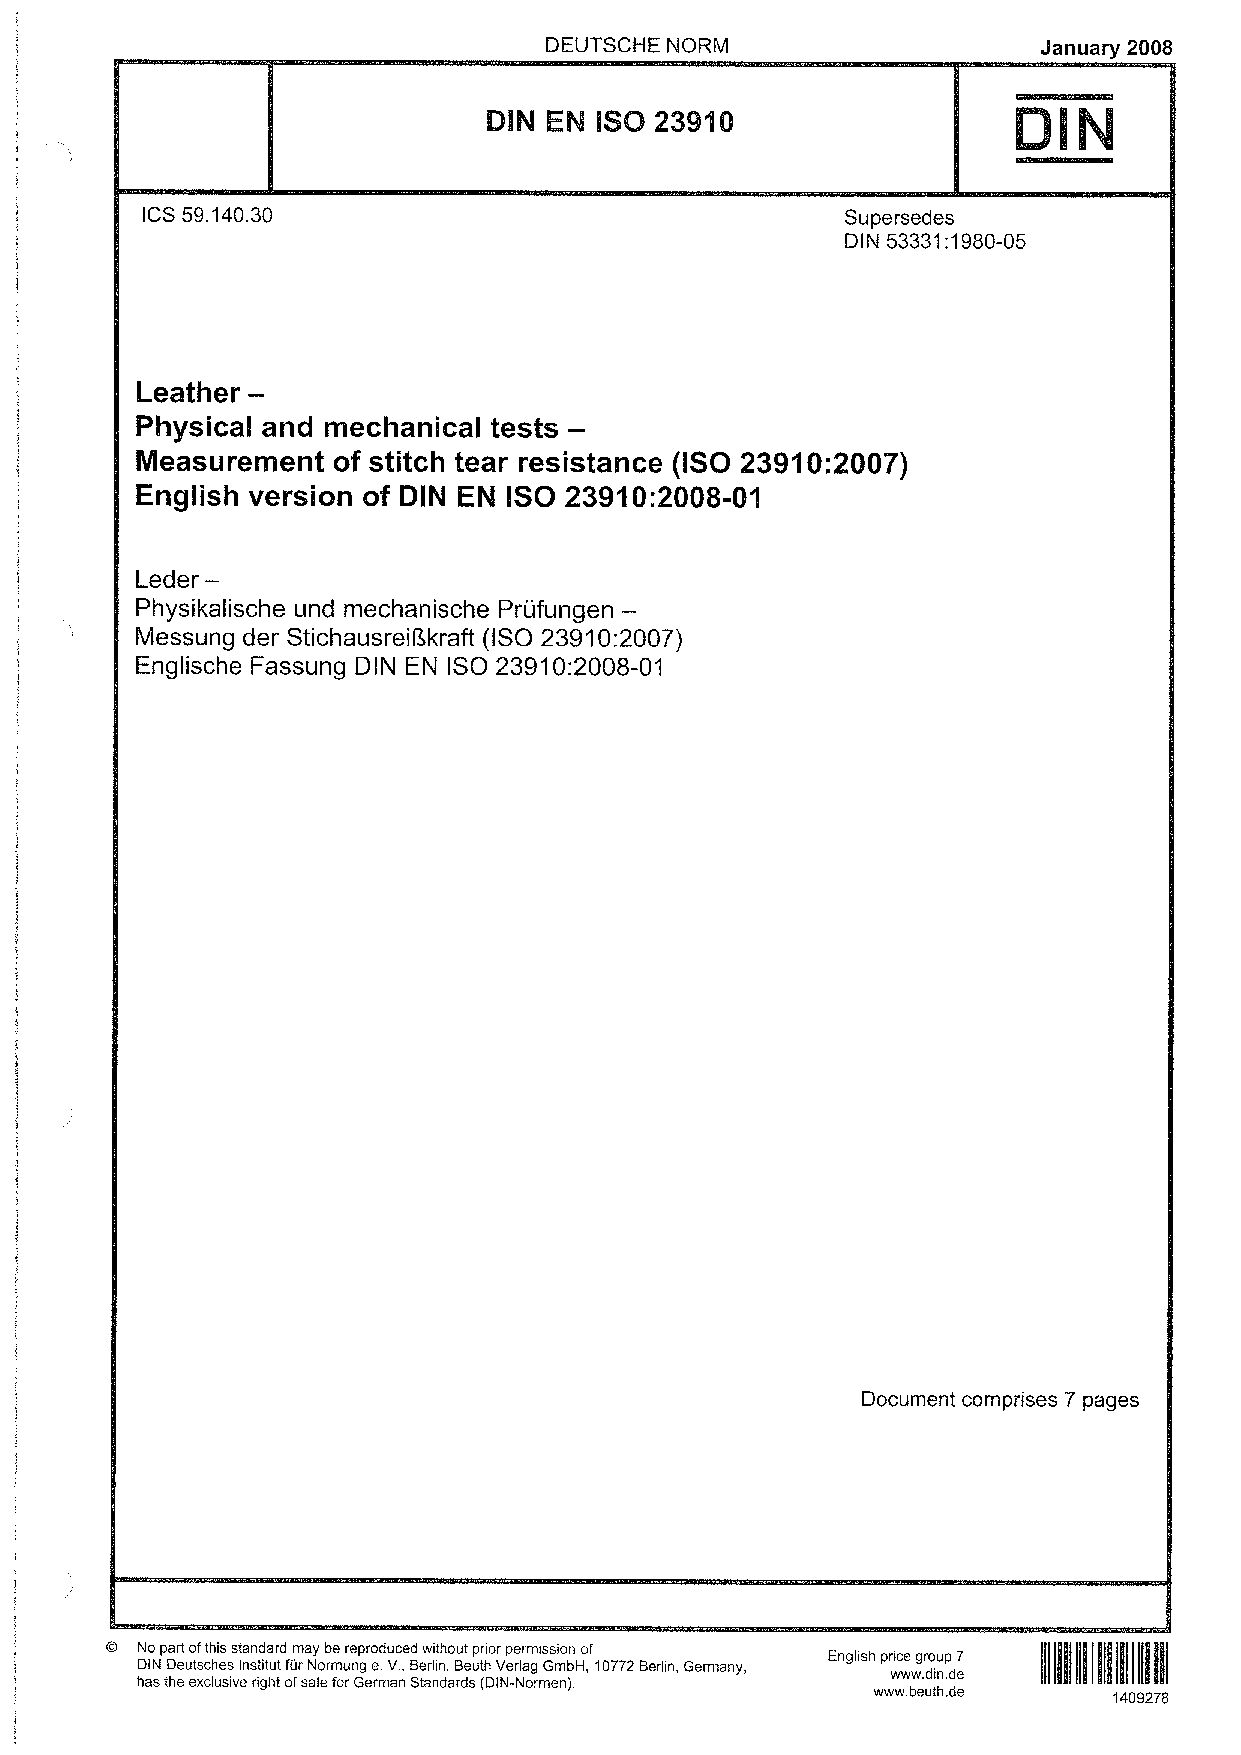 DIN EN ISO 23910:2008封面图